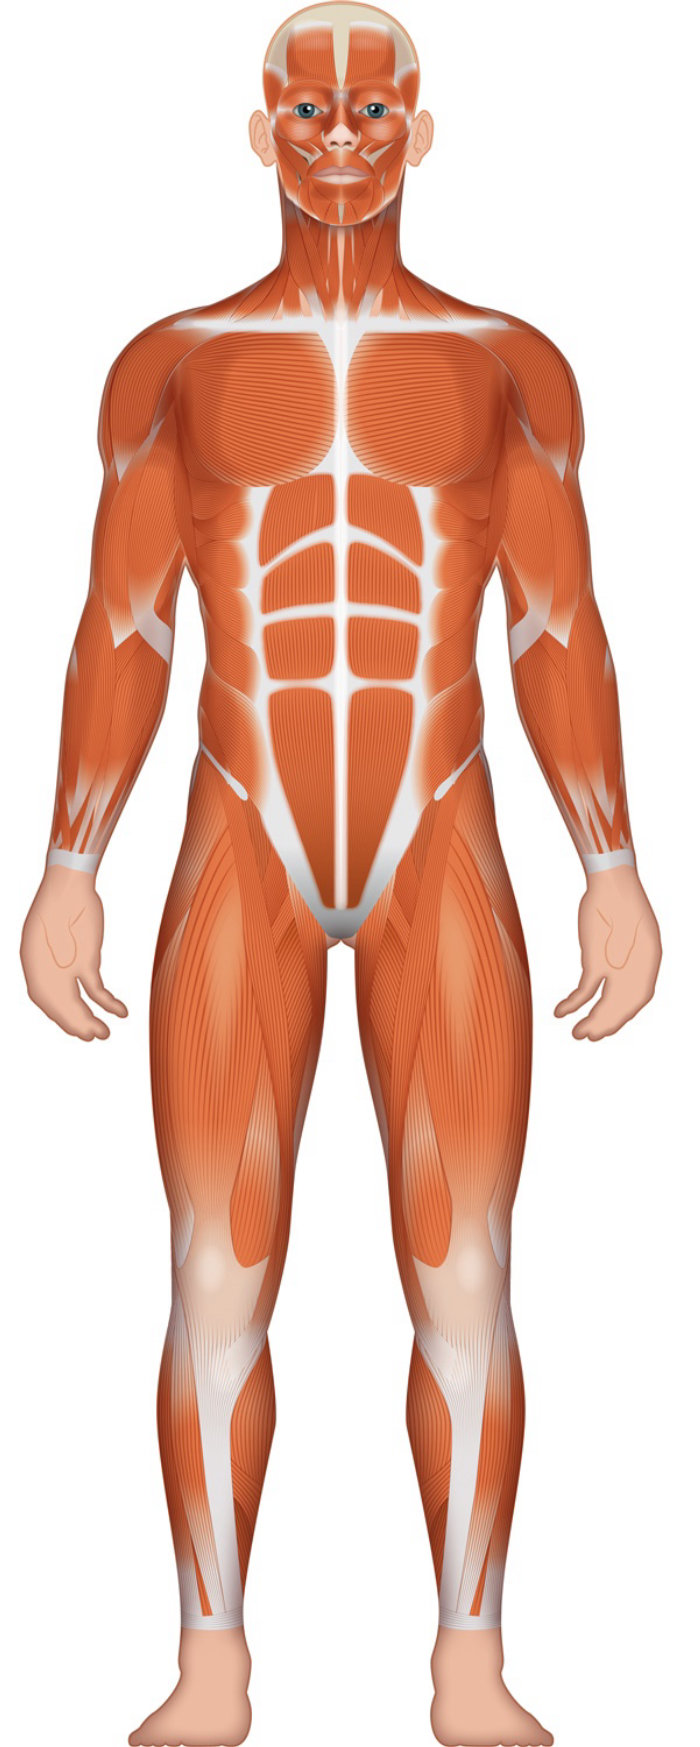 Ilustración de musculatura